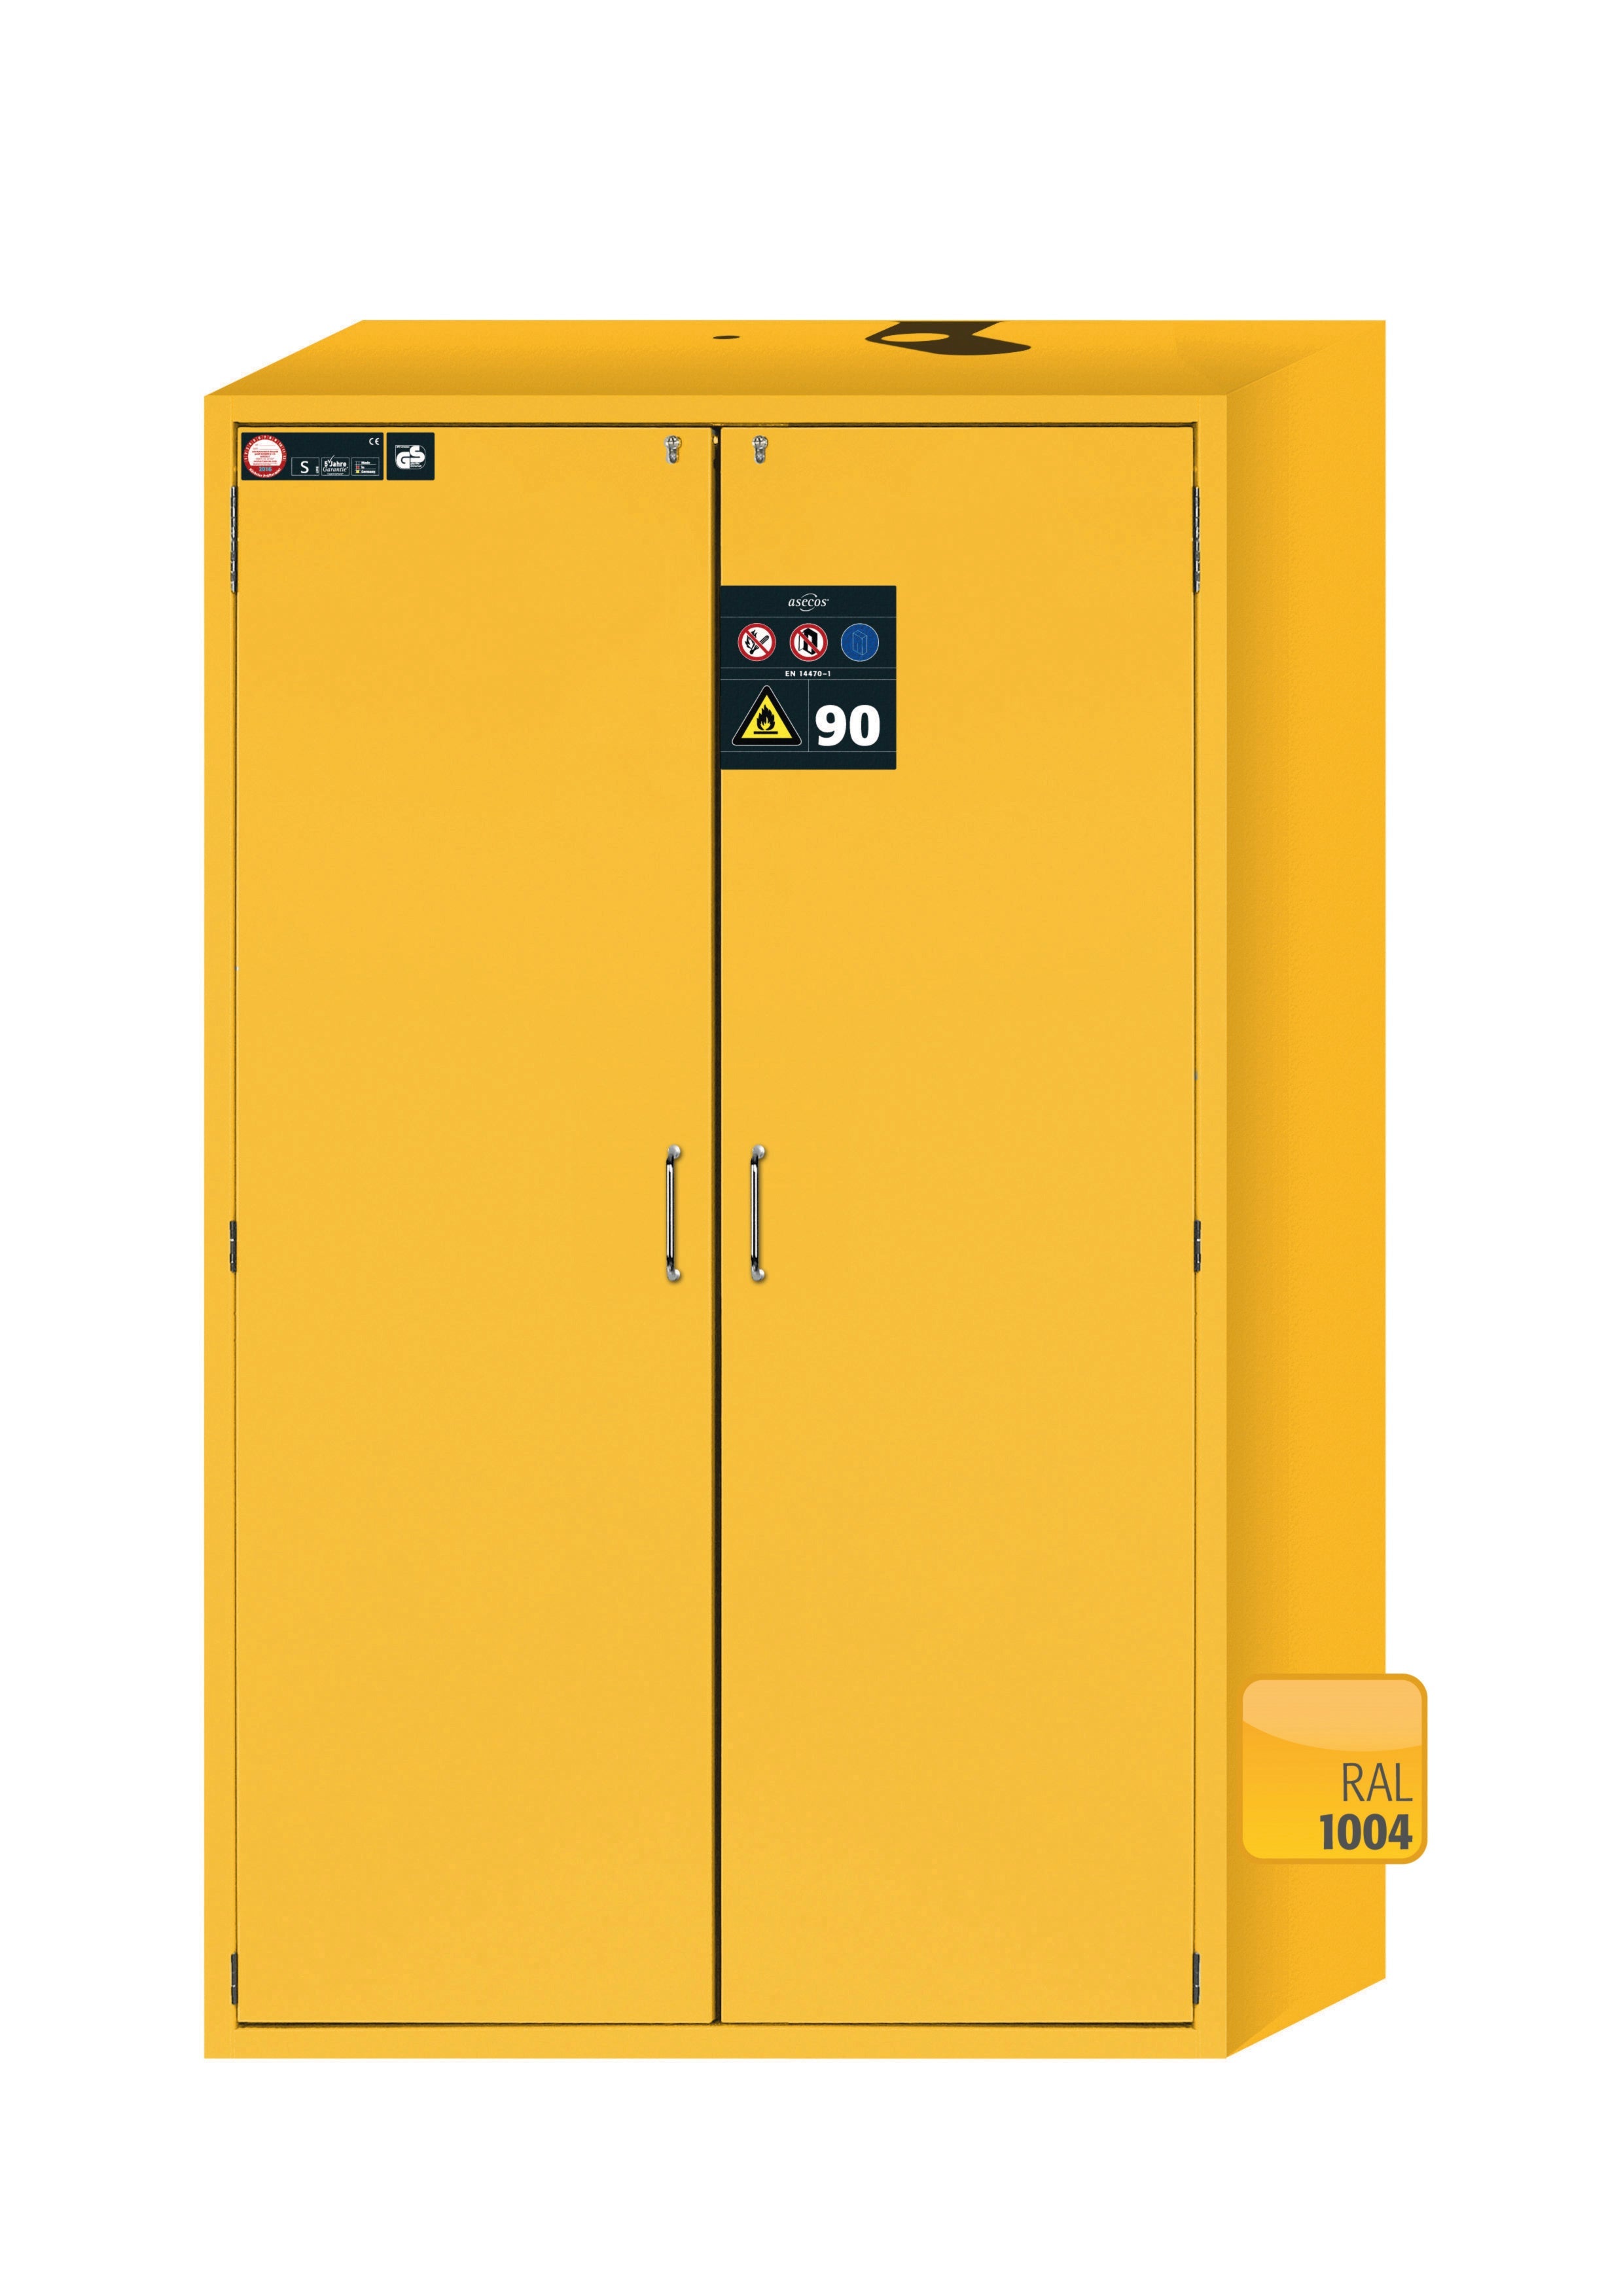 Armoire de sécurité type 90 S-CLASSIC-90 modèle S90.196.120.MV.WDAS en jaune de sécurité RAL 1004 avec 6 plateaux coulissants standard (acier inoxydable 1.4301)